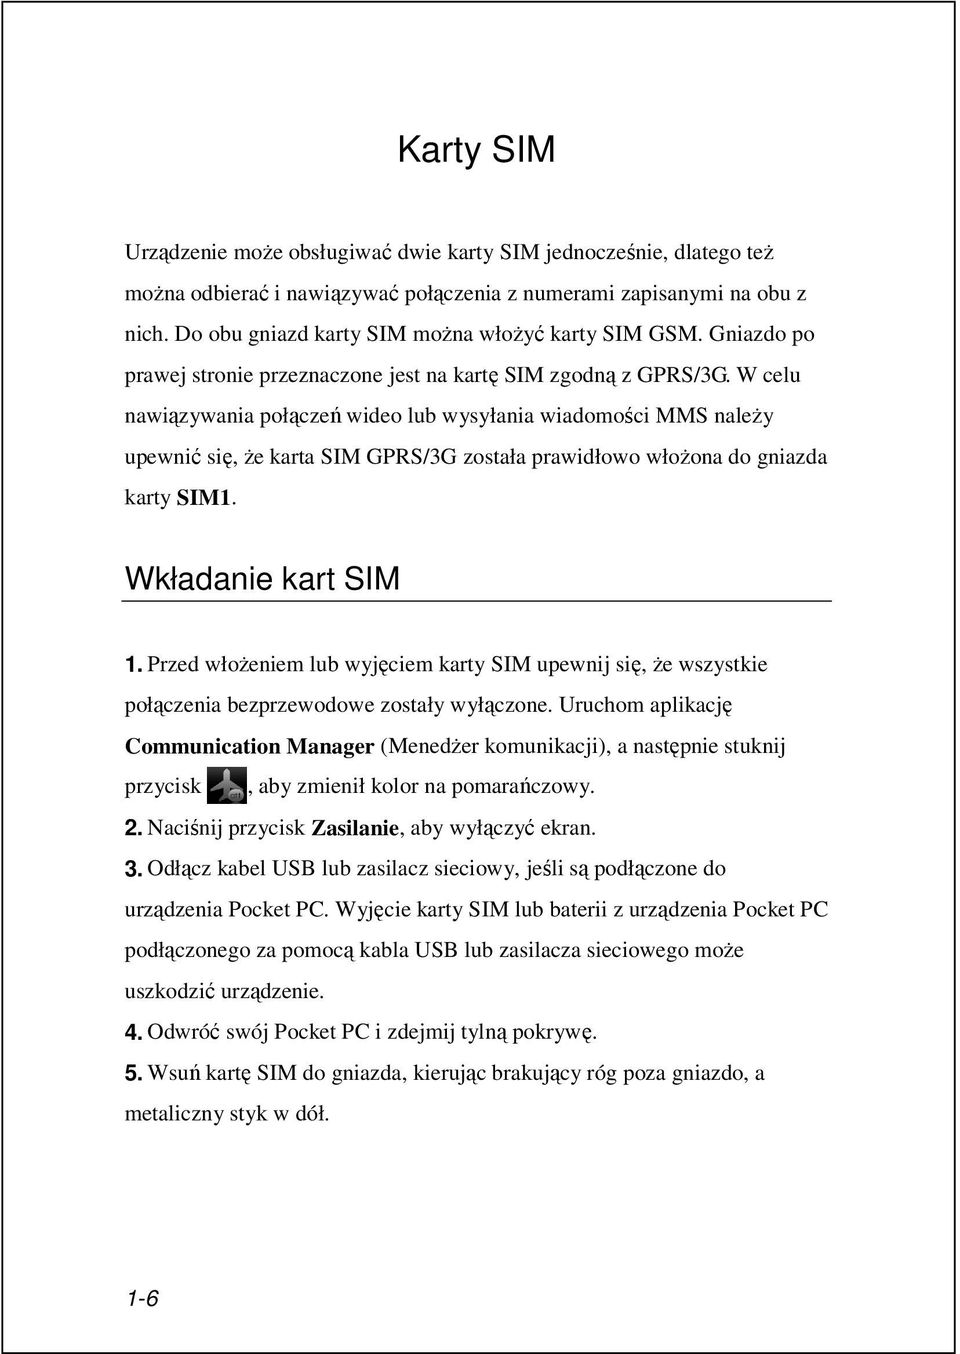 W celu nawiązywania połączeń wideo lub wysyłania wiadomości MMS należy upewnić się, że karta SIM GPRS/3G została prawidłowo włożona do gniazda karty SIM1. Wkładanie kart SIM 1.